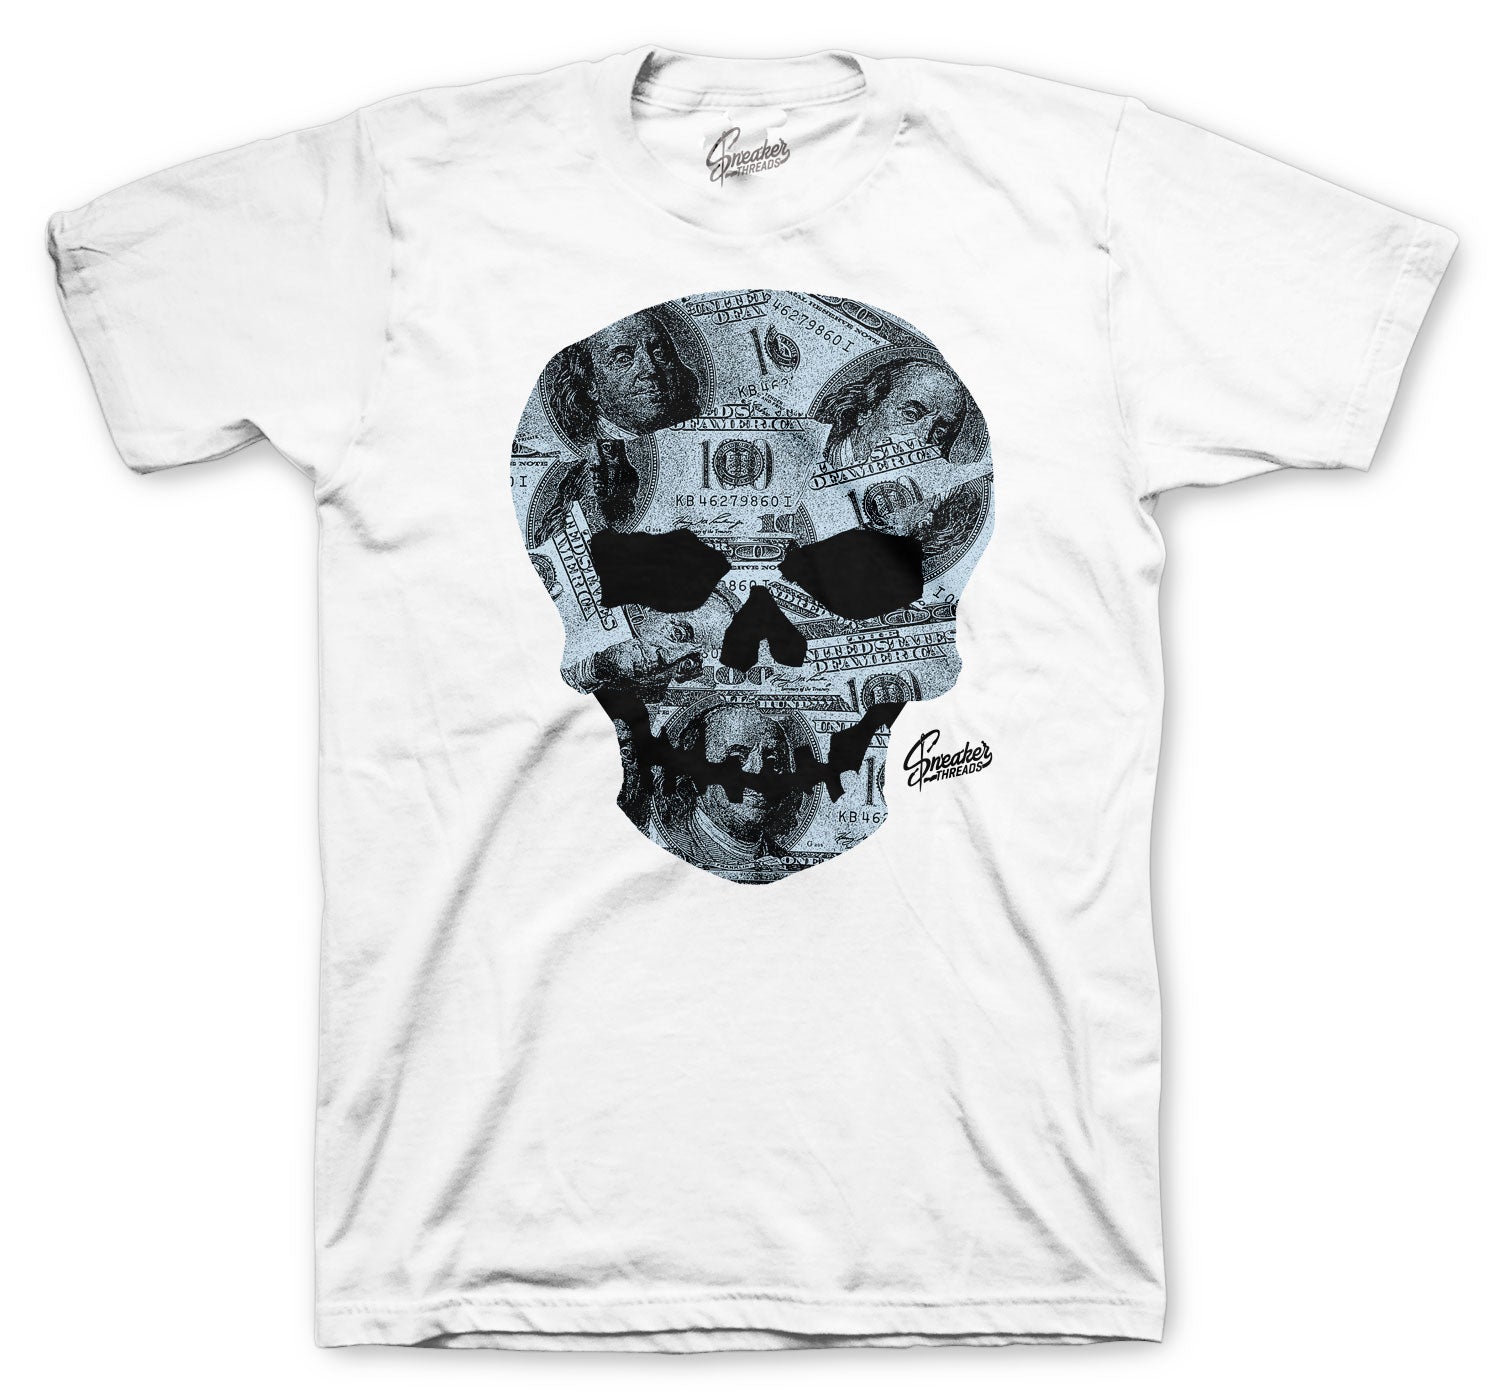 700 Blue Tint Shirt - Money Skull - White